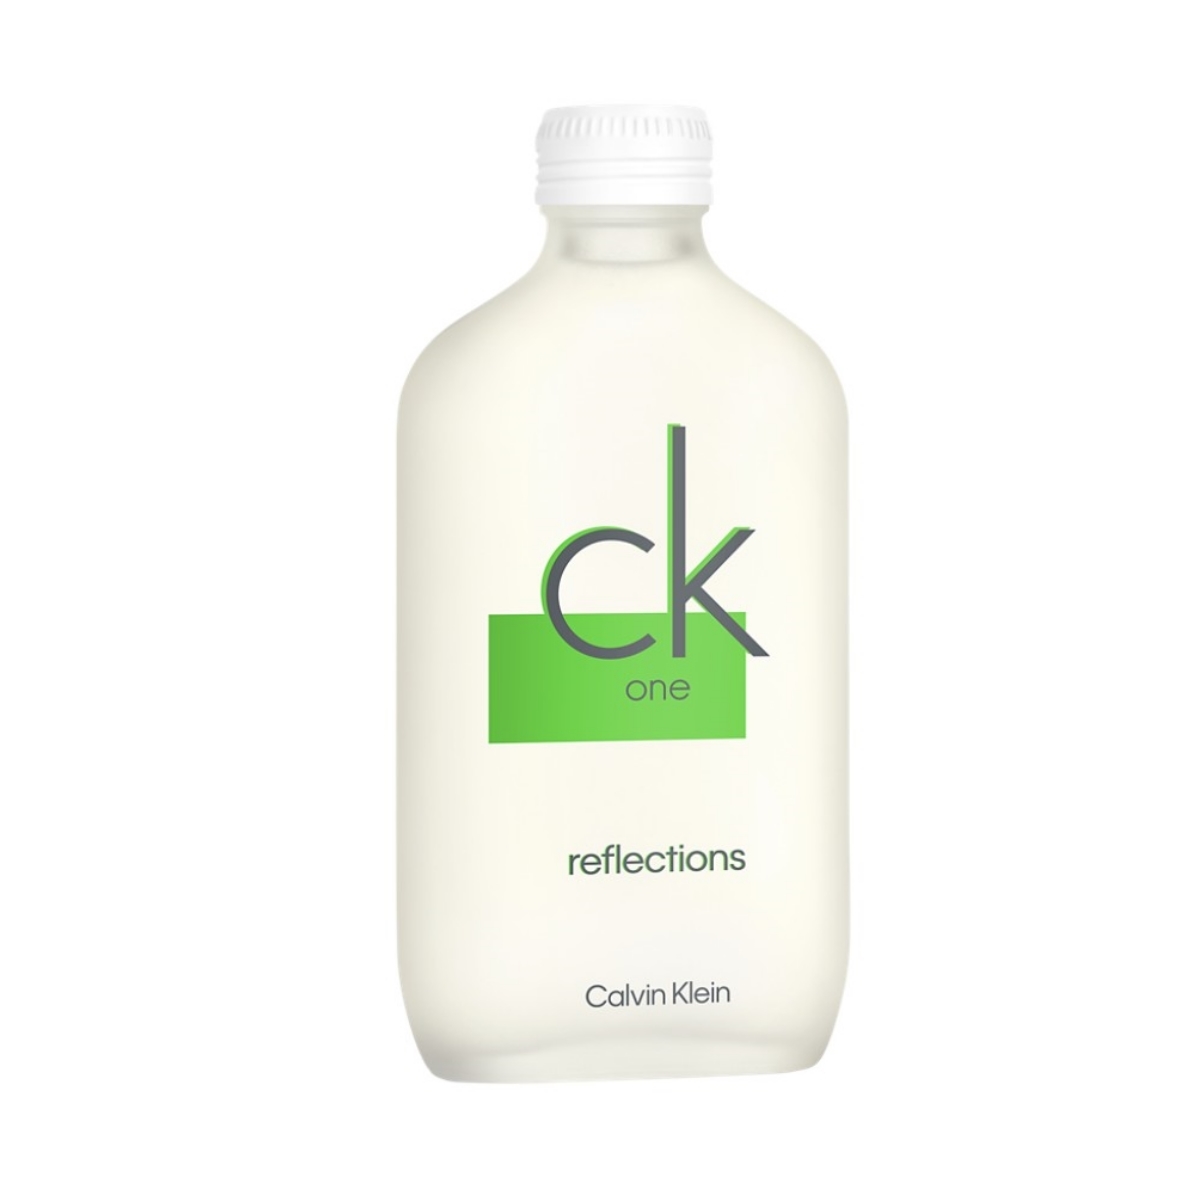 CK One Reflections de Calvin Klein.